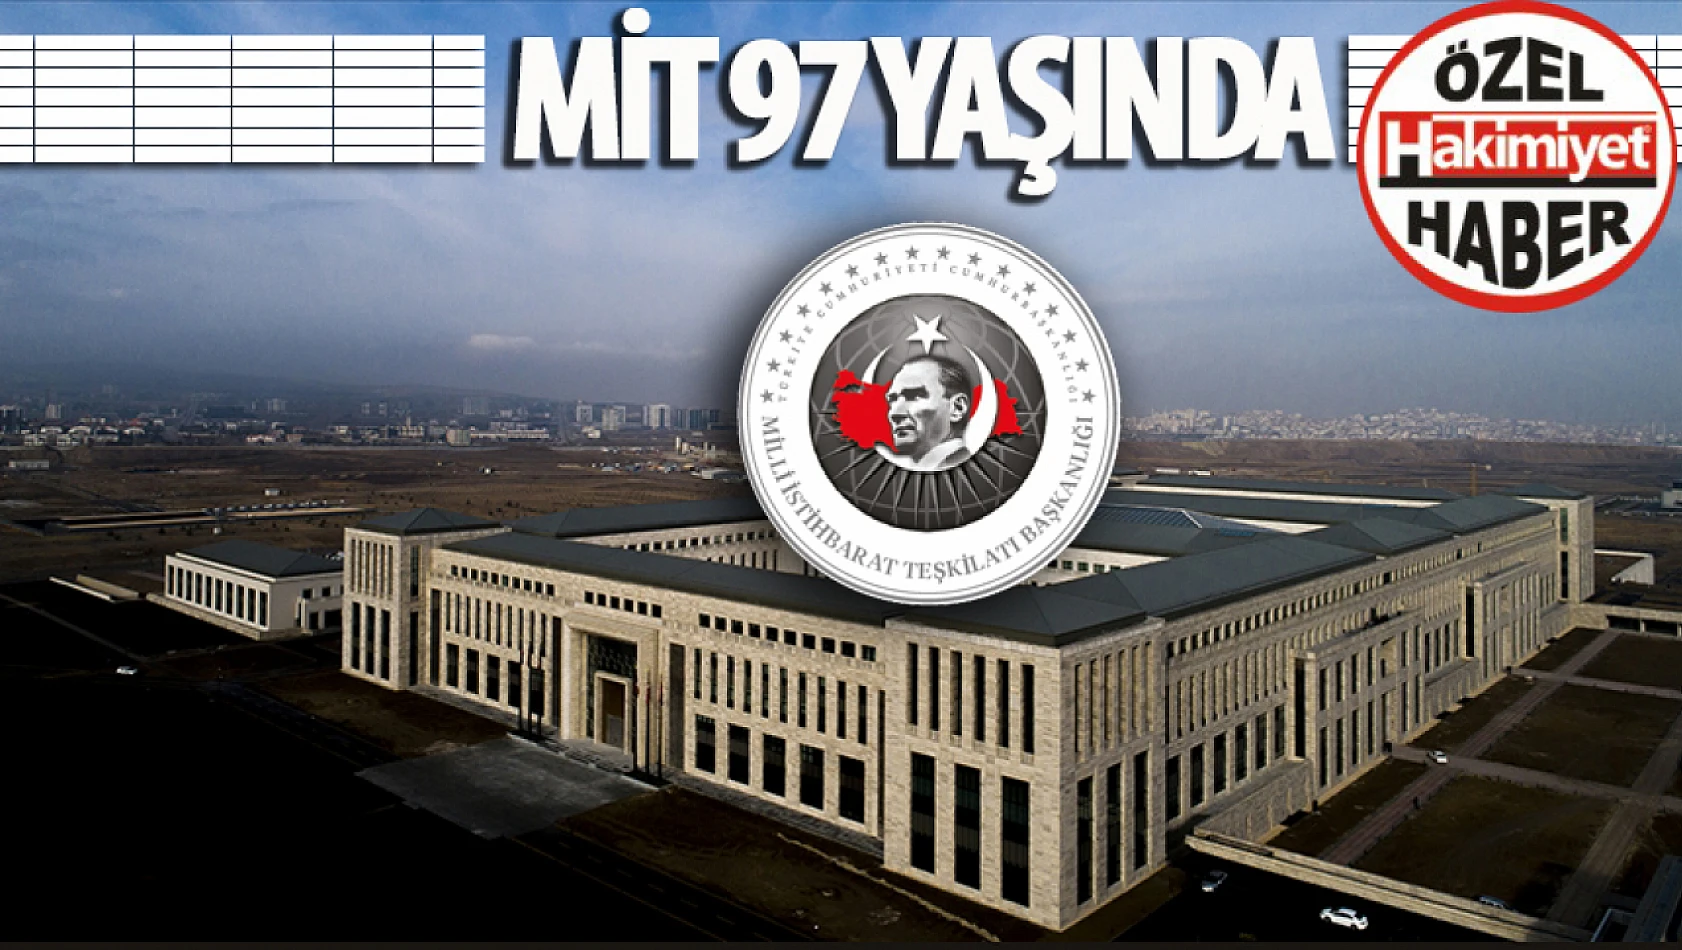 MİT'in 97 Yıllık Kökleri: Türkiye'nin Güvenliği İçin Aktif Rol Oynayan Bir Güç